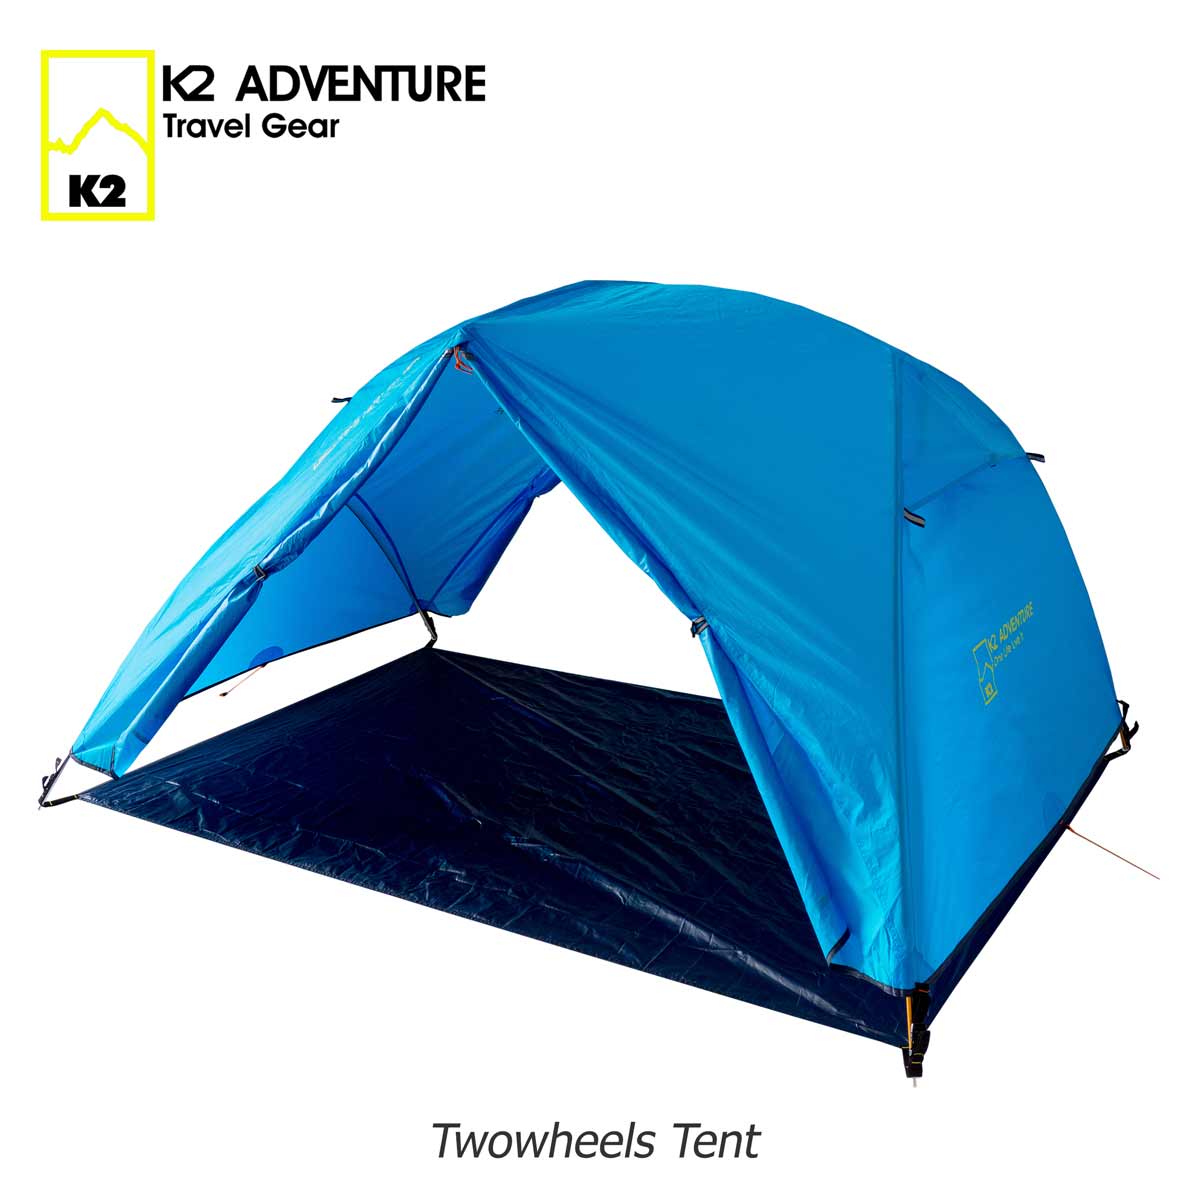 เต็นท์ Twowheels 2 คนนอน กันฝน กันลม น้ำหนักเบา เล็กเมือยามเก็บ สนใจทักไลน์ @k2adventure